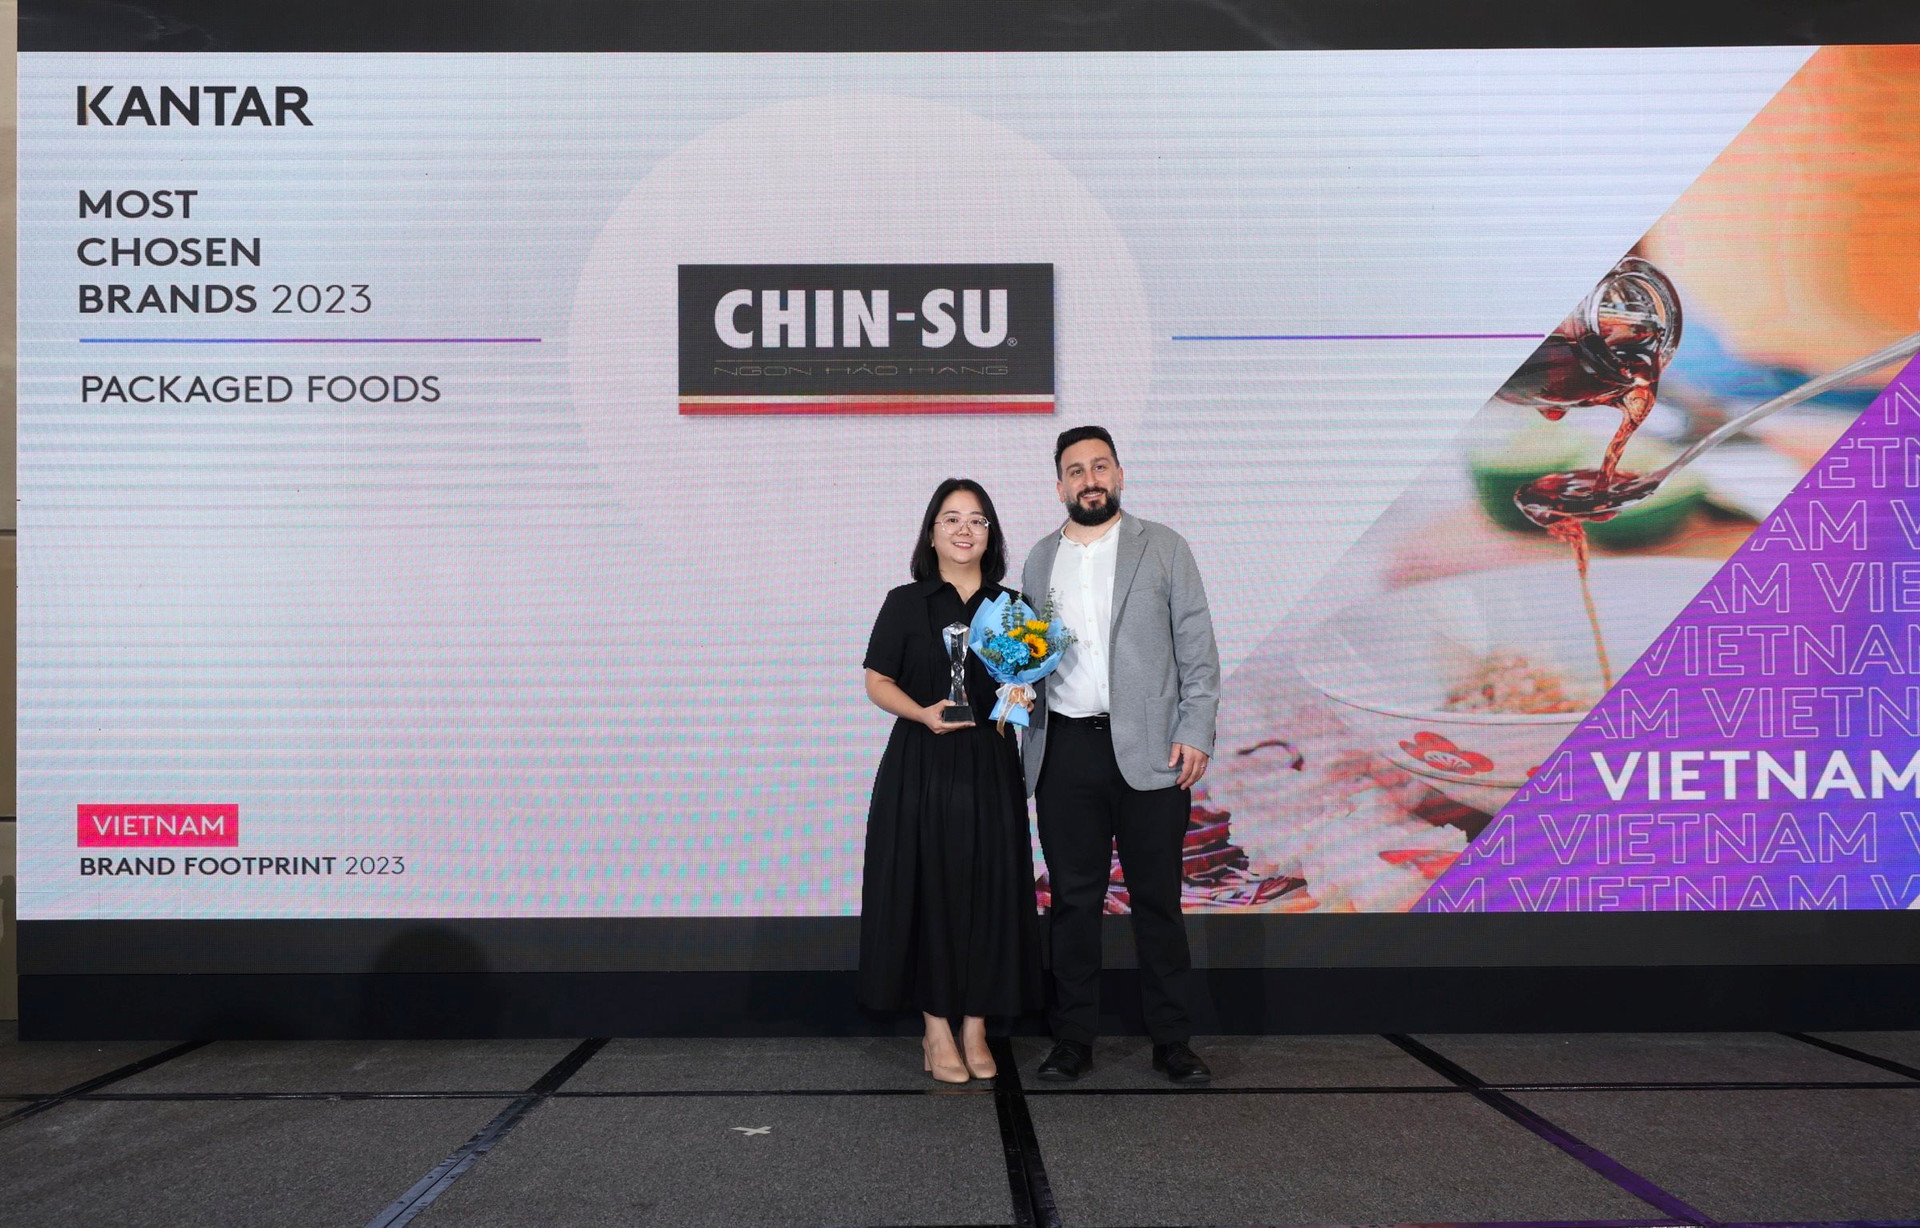 Chin-su khẳng định vị thế top đầu trong “Dấu chân thương hiệu tại Việt Nam 2023”